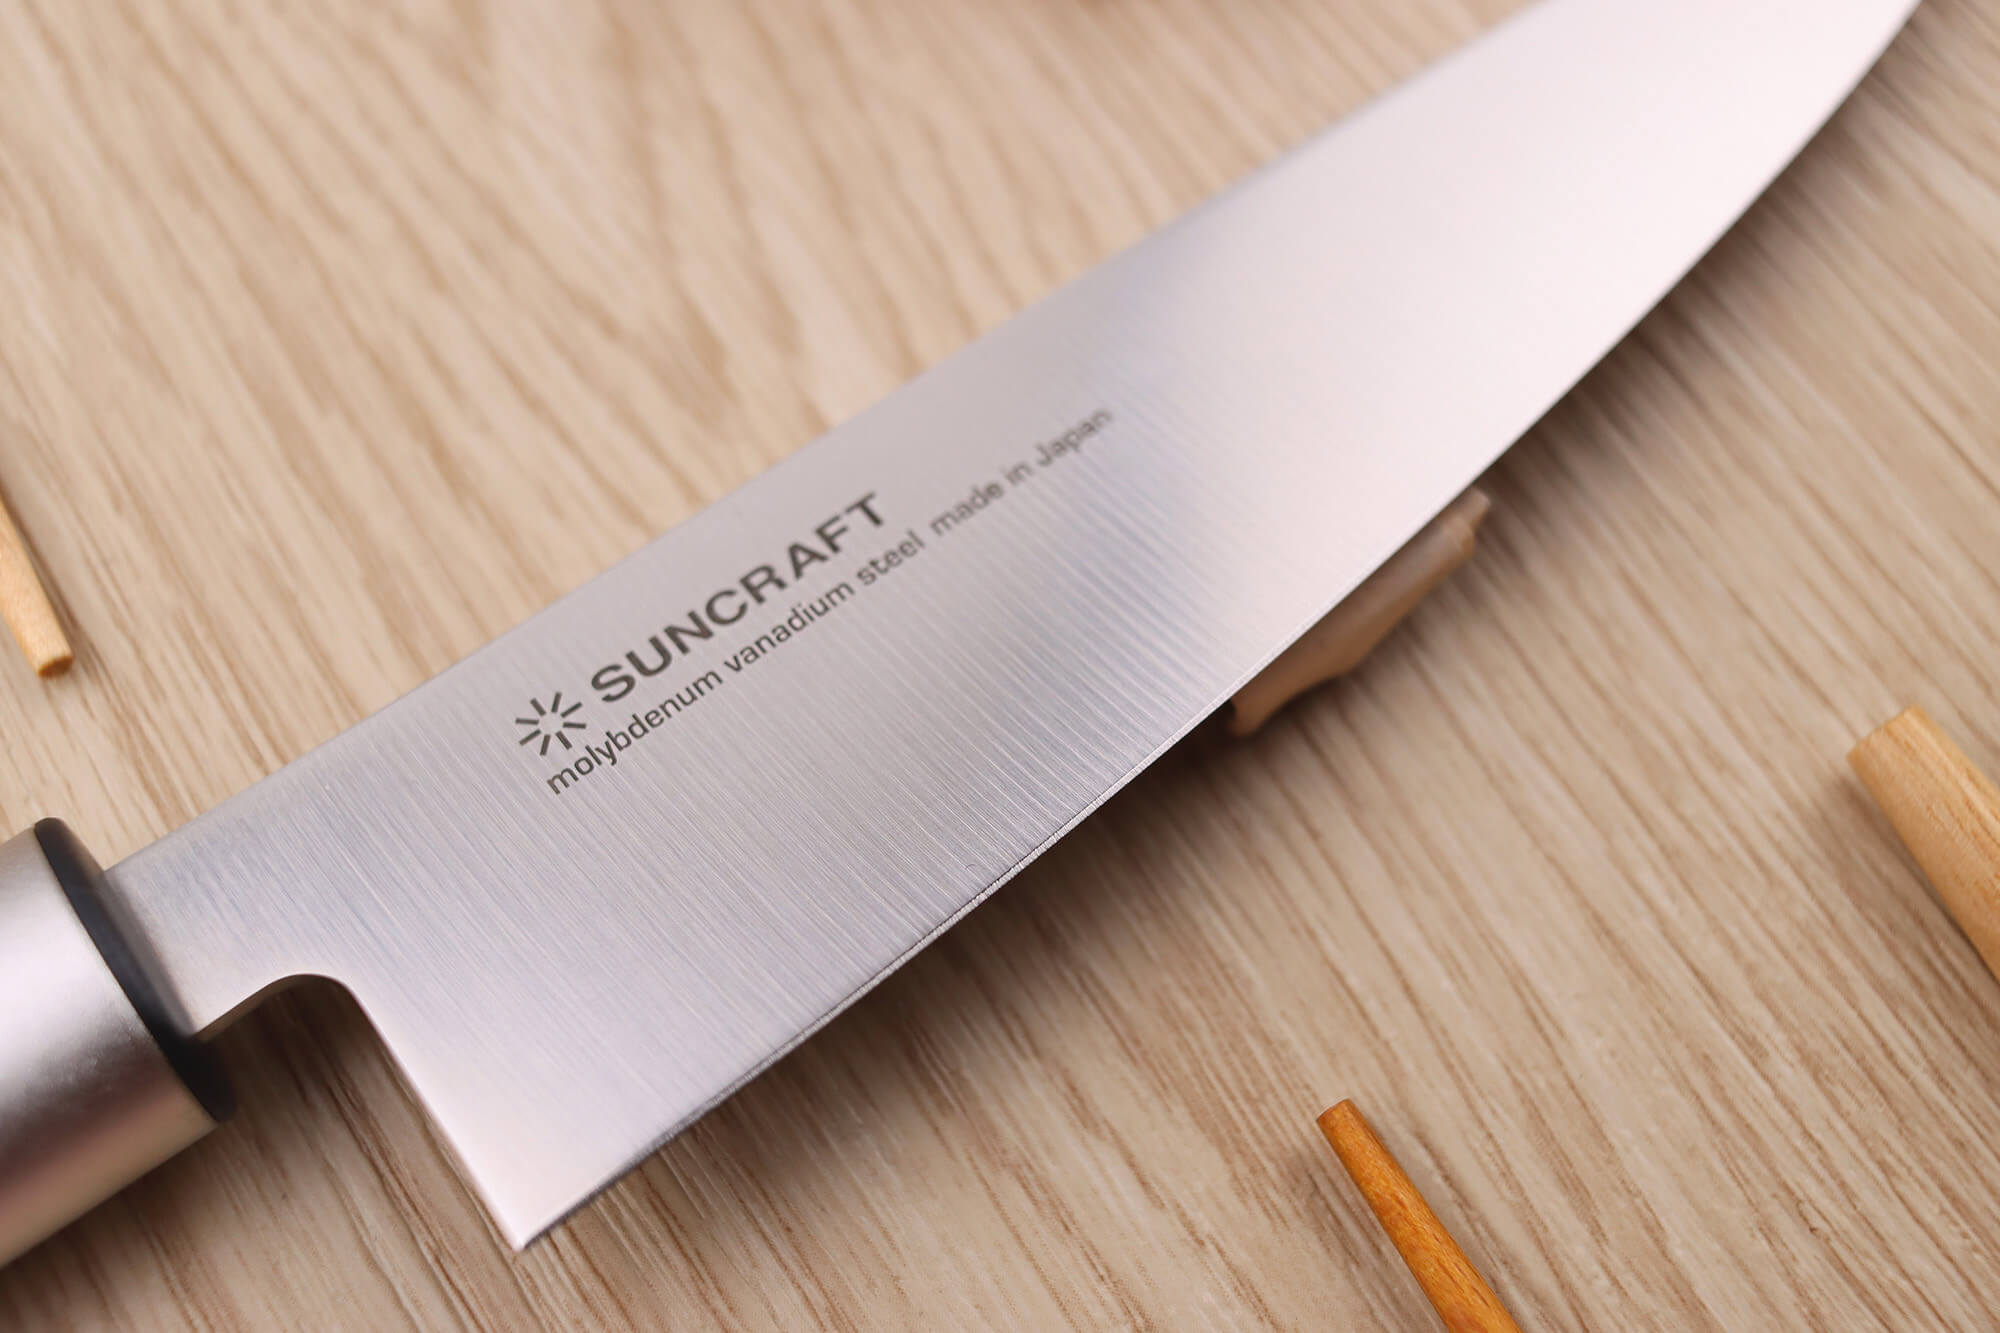 Couteau japonais Jaku Forgé - Santoku 14 cm